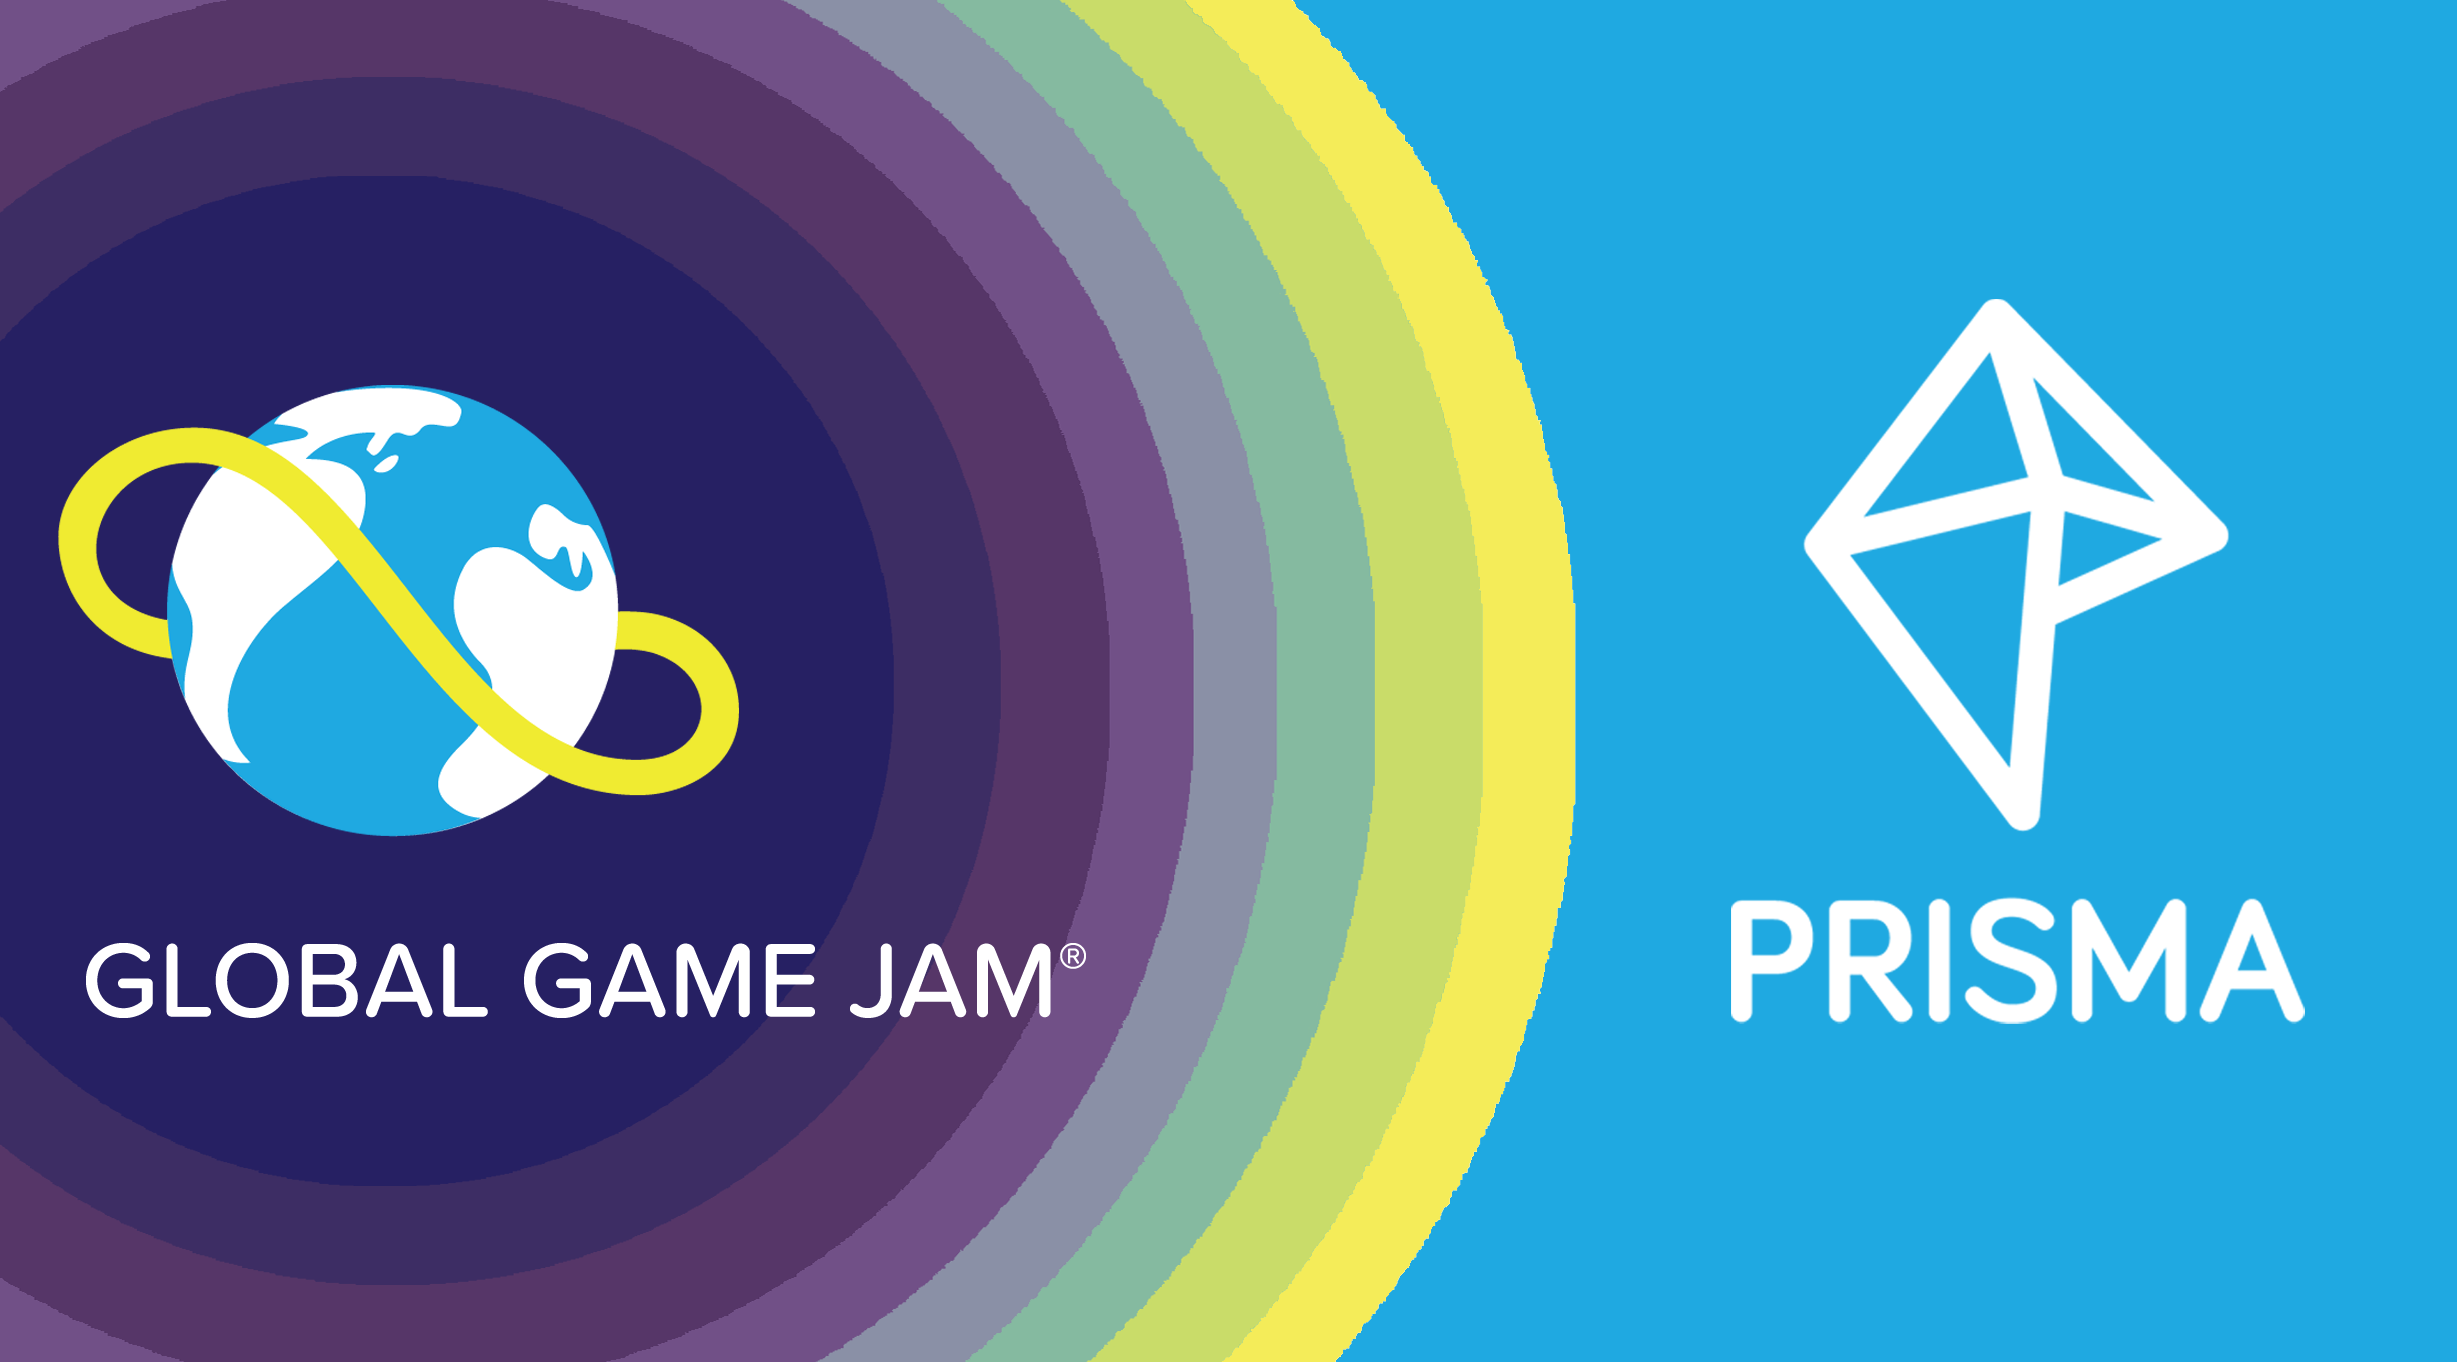 Global Game Jam 2022